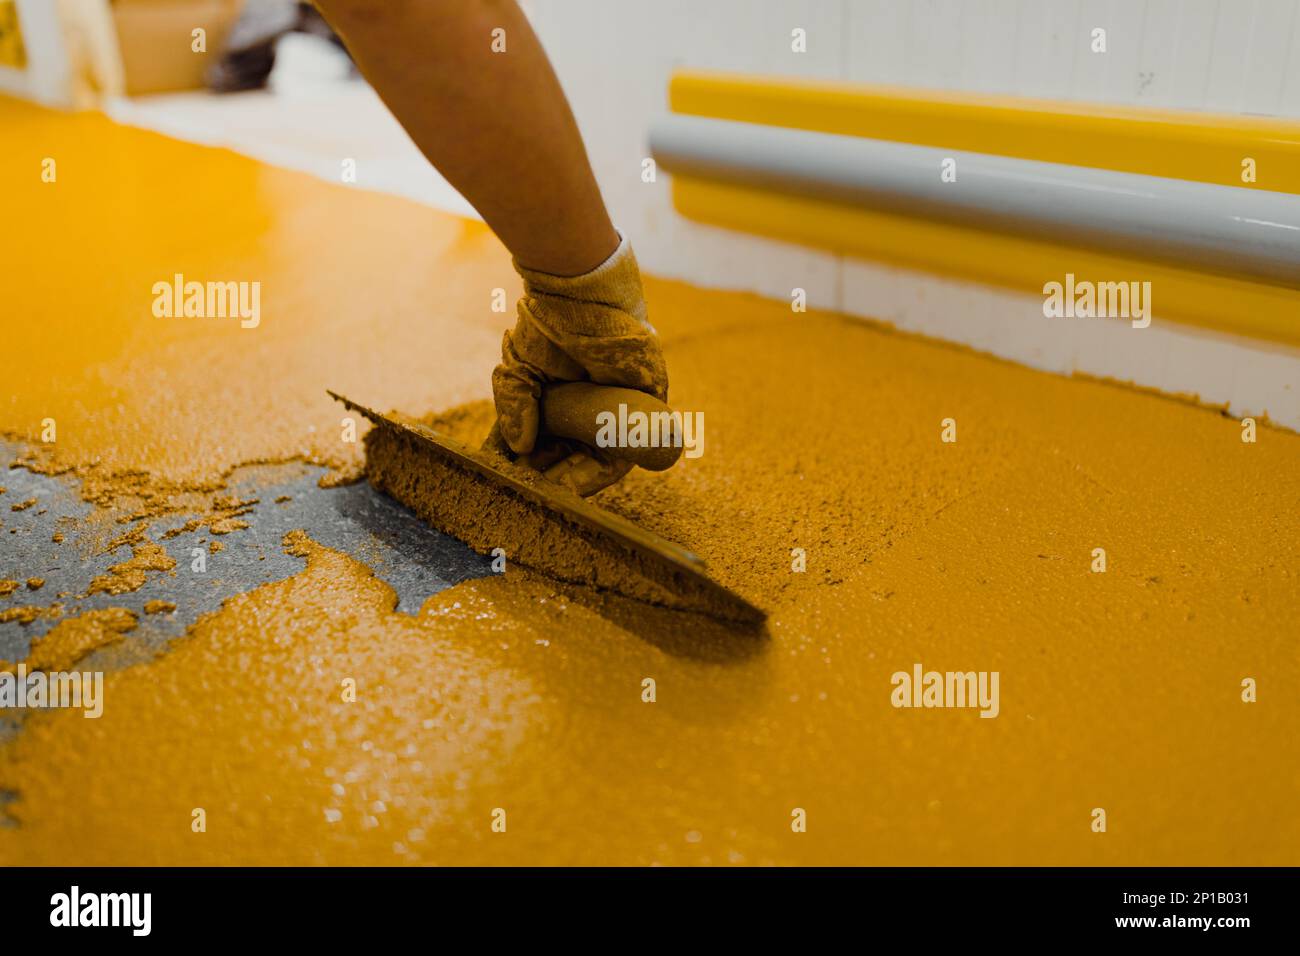 l'applicatore epossidico per pavimenti esegue lavori di verniciatura con malta epossidica poliuretanica Foto Stock